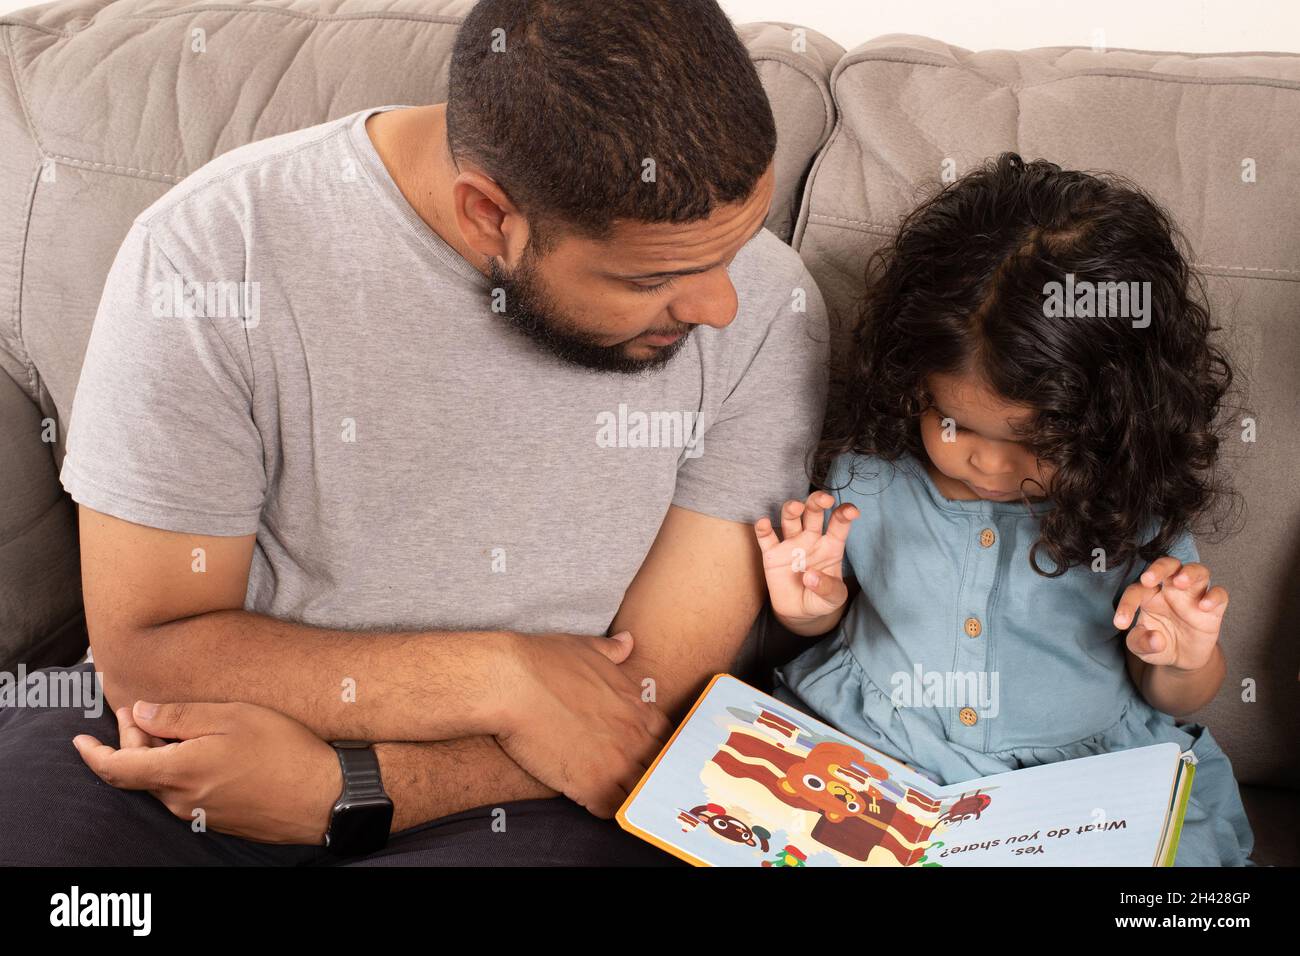 una niña de 2 años leyó a un padre, mirando ilustraciones en el libro de la mesa mientras le lee Foto de stock